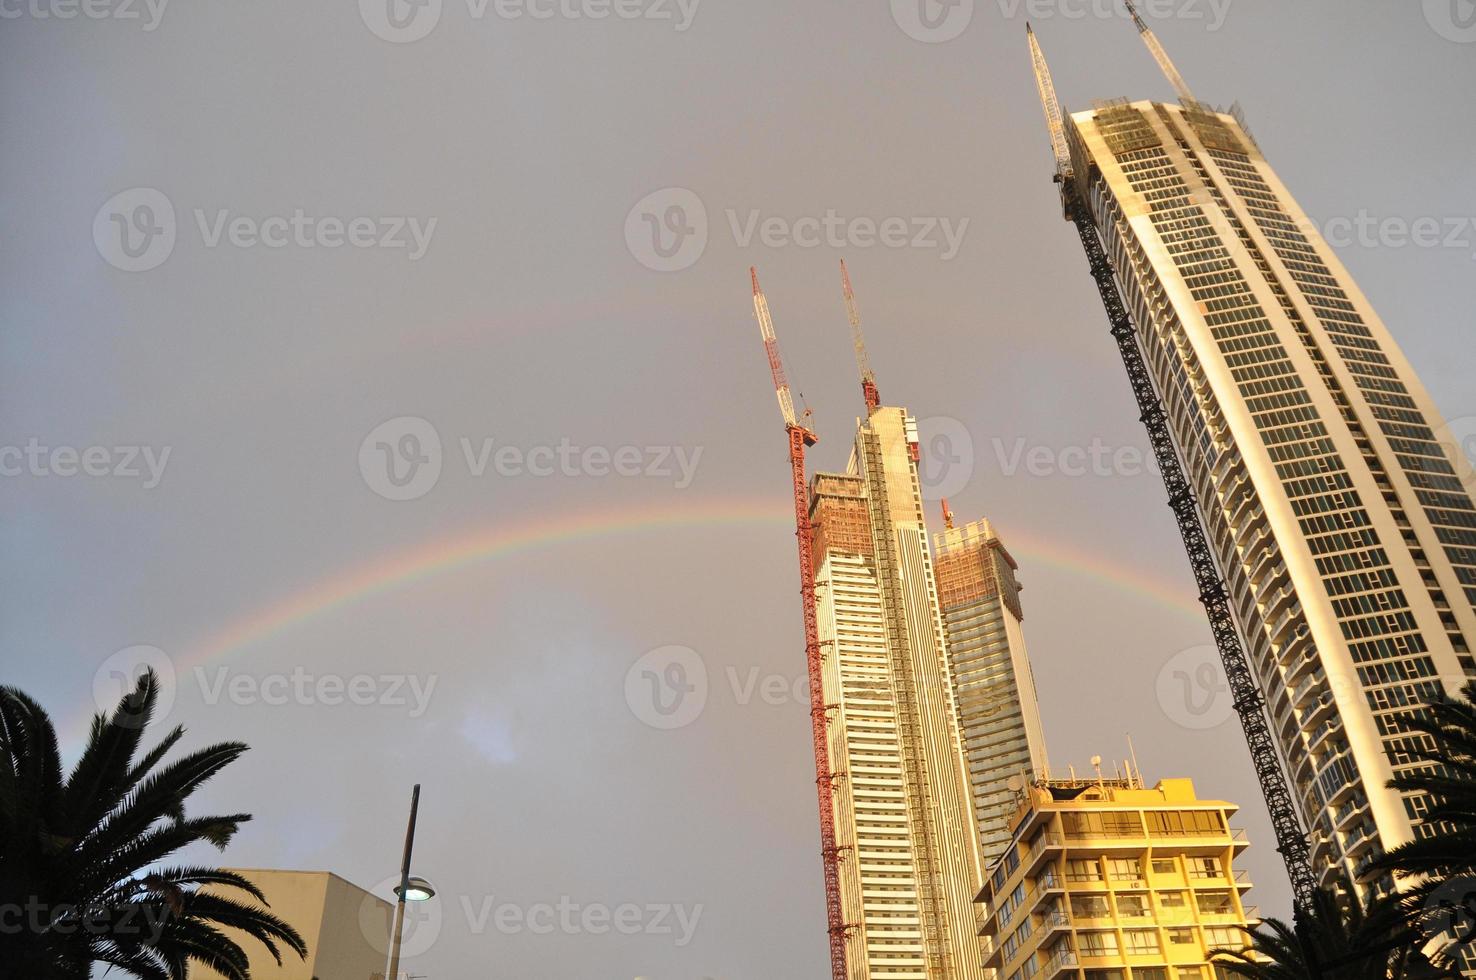 apartamentos em arranha-céus estão em construção após chuva e arco-íris foto